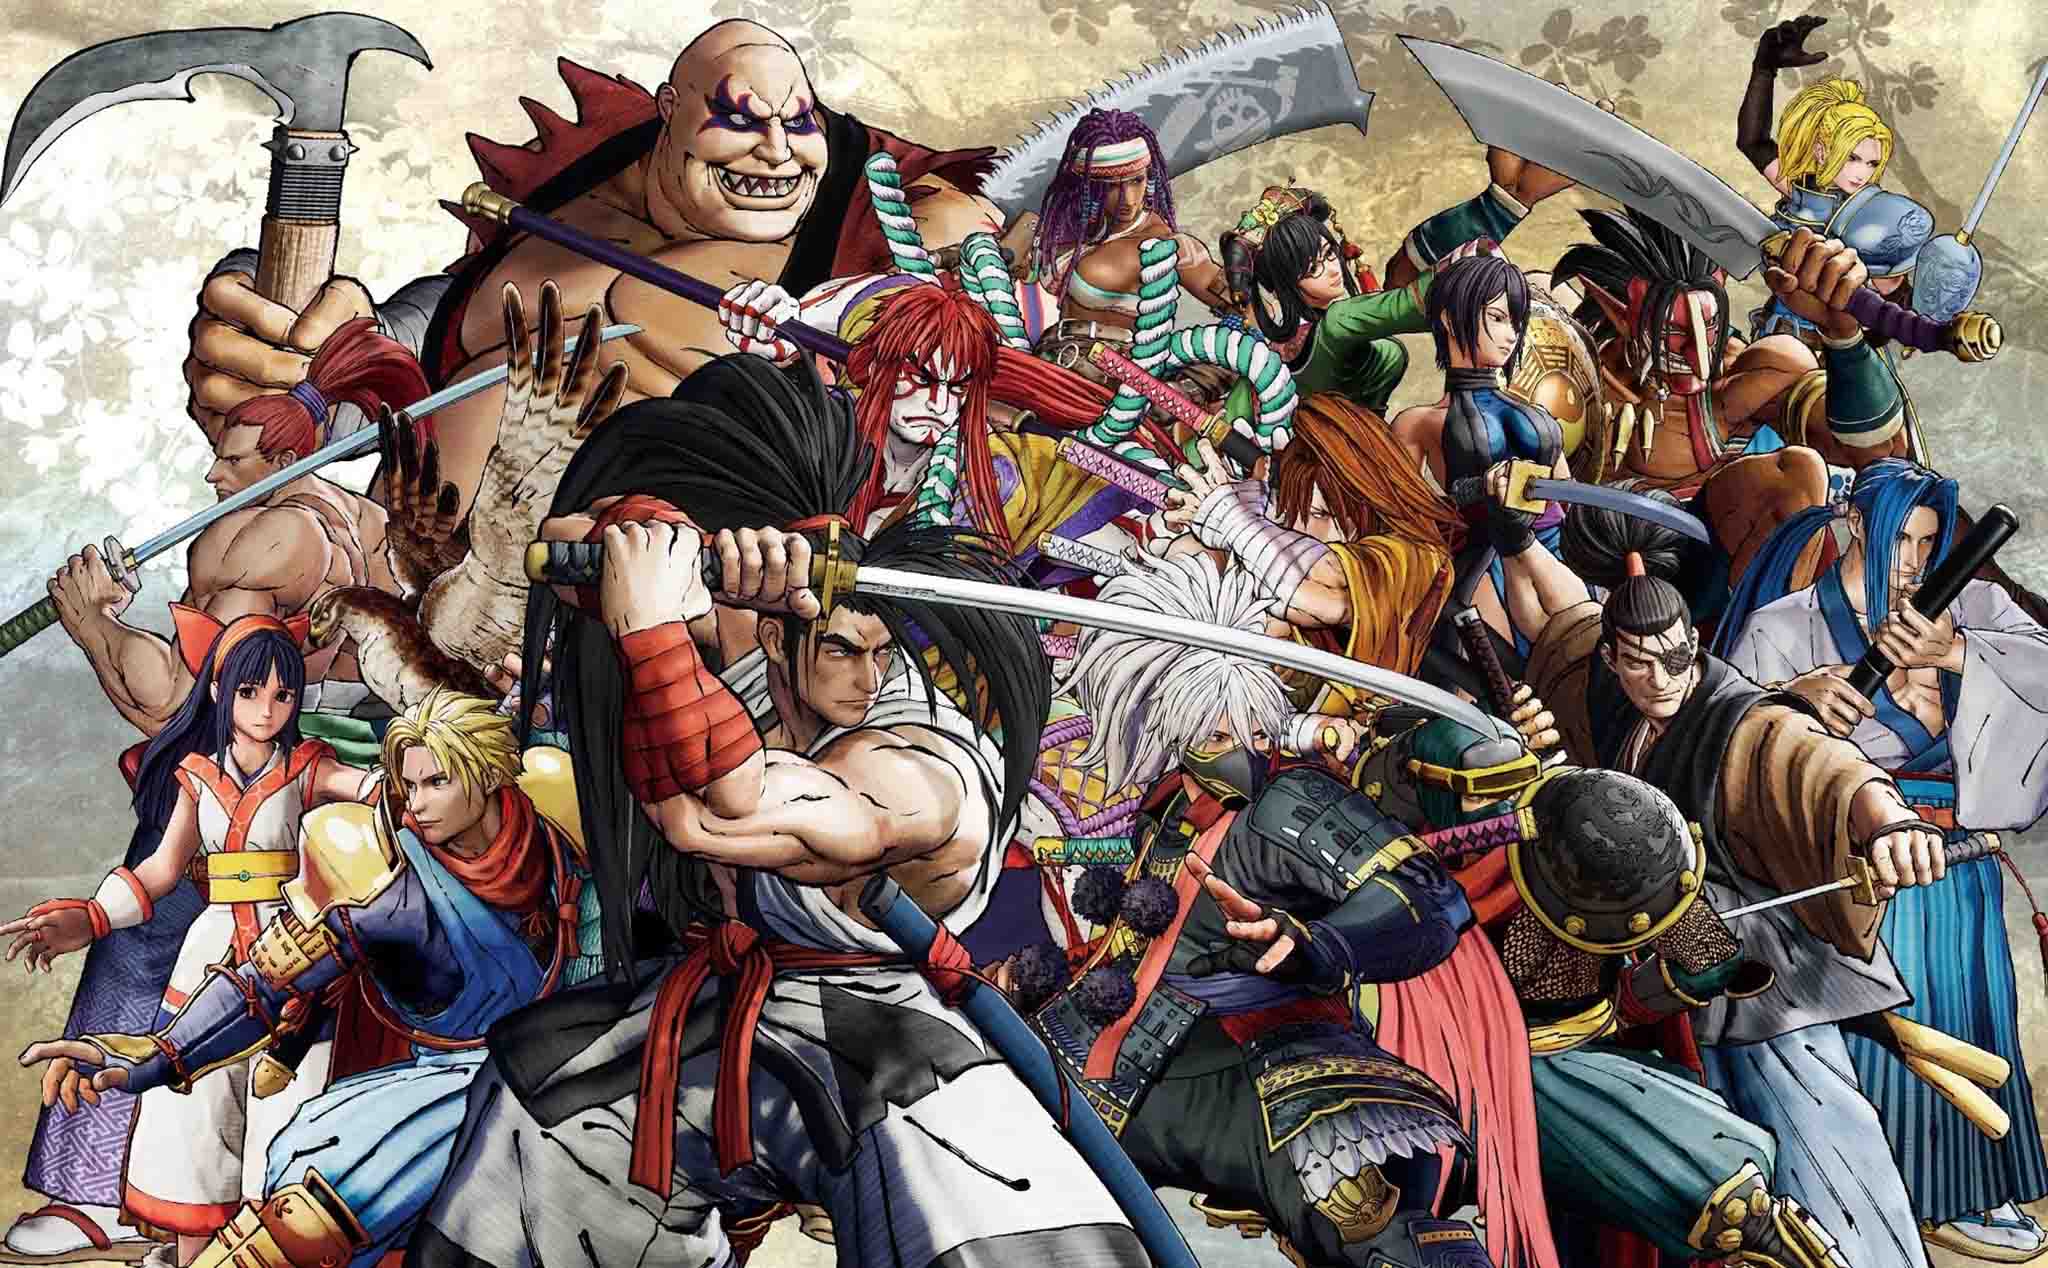 Samurai Shodown: Bạn yêu thích các trò chơi đối kháng và đặc biệt là những trận chiến samurai đầy gay cấn? Hãy đến với Samurai Shodown - một trong những tựa game được săn đón nhất hiện nay với đồ họa tuyệt đẹp và cốt truyện hấp dẫn. Còn chần chờ gì nữa, hãy đến và cùng trải nghiệm!